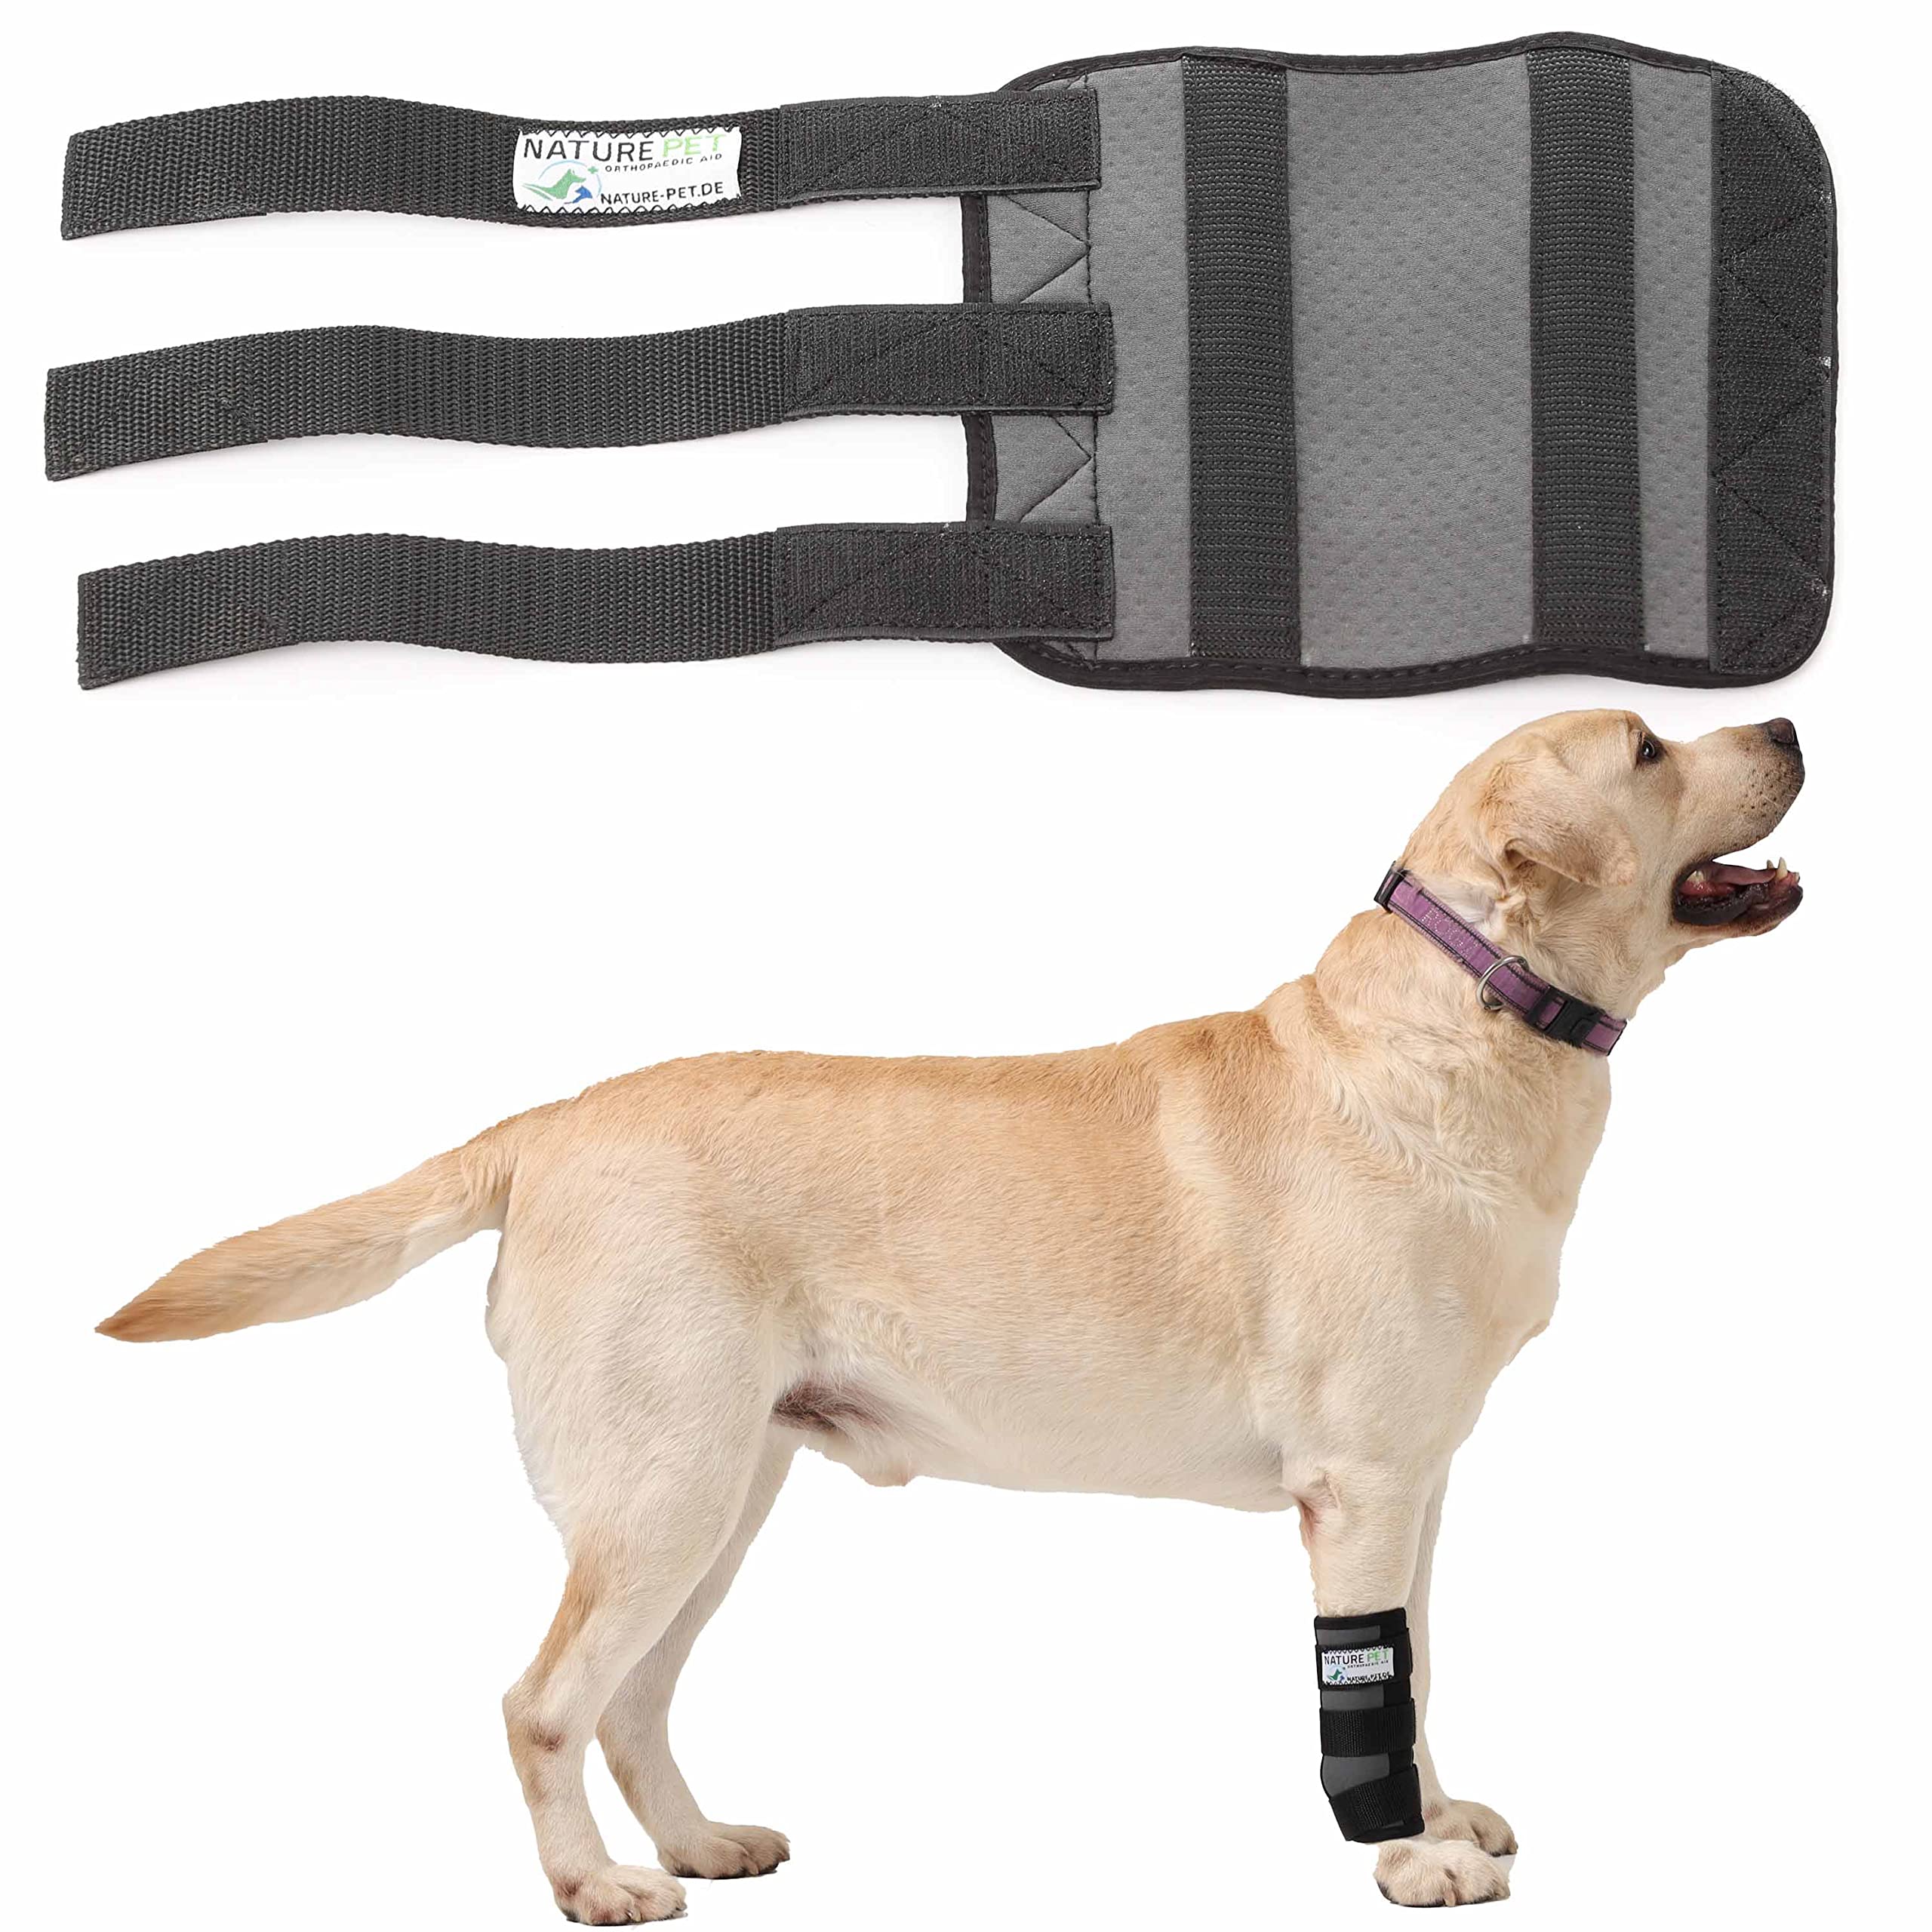 Nature Pet Hundesport Bandage für den Vorderlauf (S, Grau)